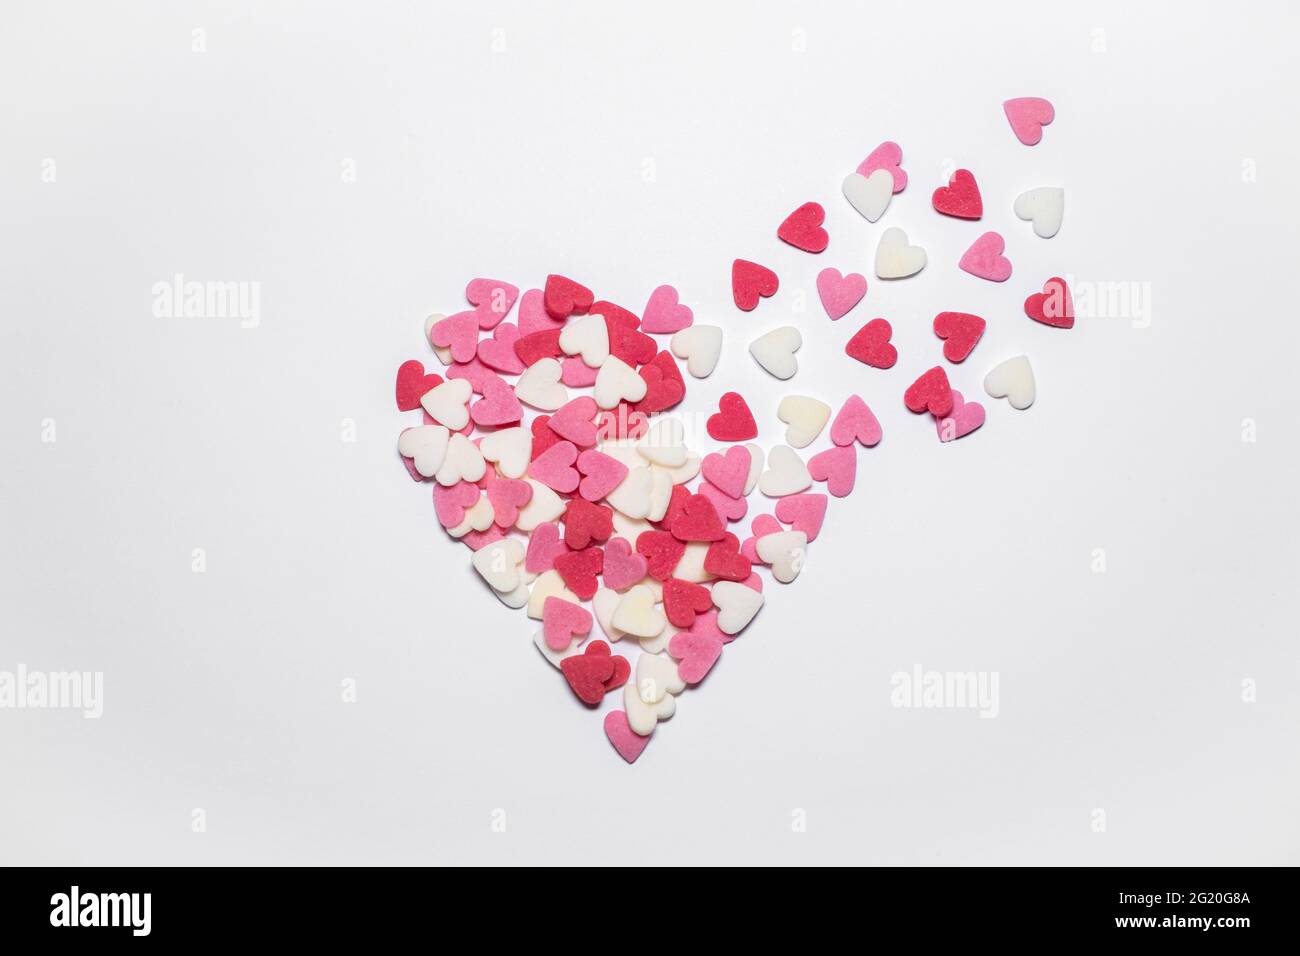 Cœurs doux.Saupoudrés de sucre en forme de cœur rose, rouge et blanc.Des petits coeurs colorés qui volent.Carte ou fond de jour de la Saint-Valentin ou de la fête des mères. Banque D'Images